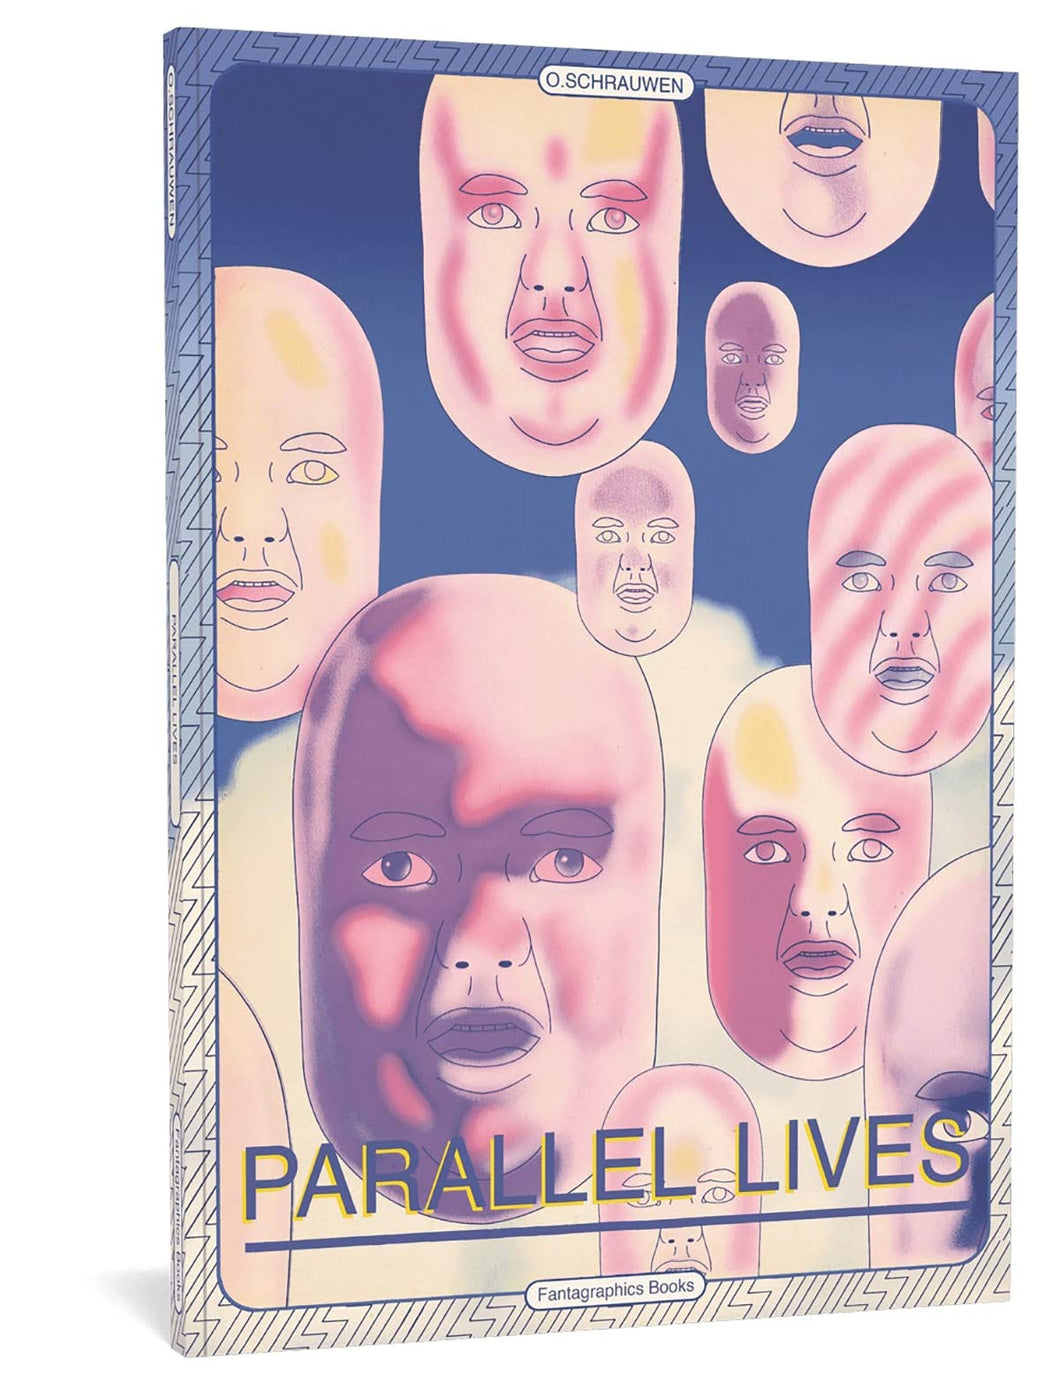 Parallel Lives by Olivier Schrauwen